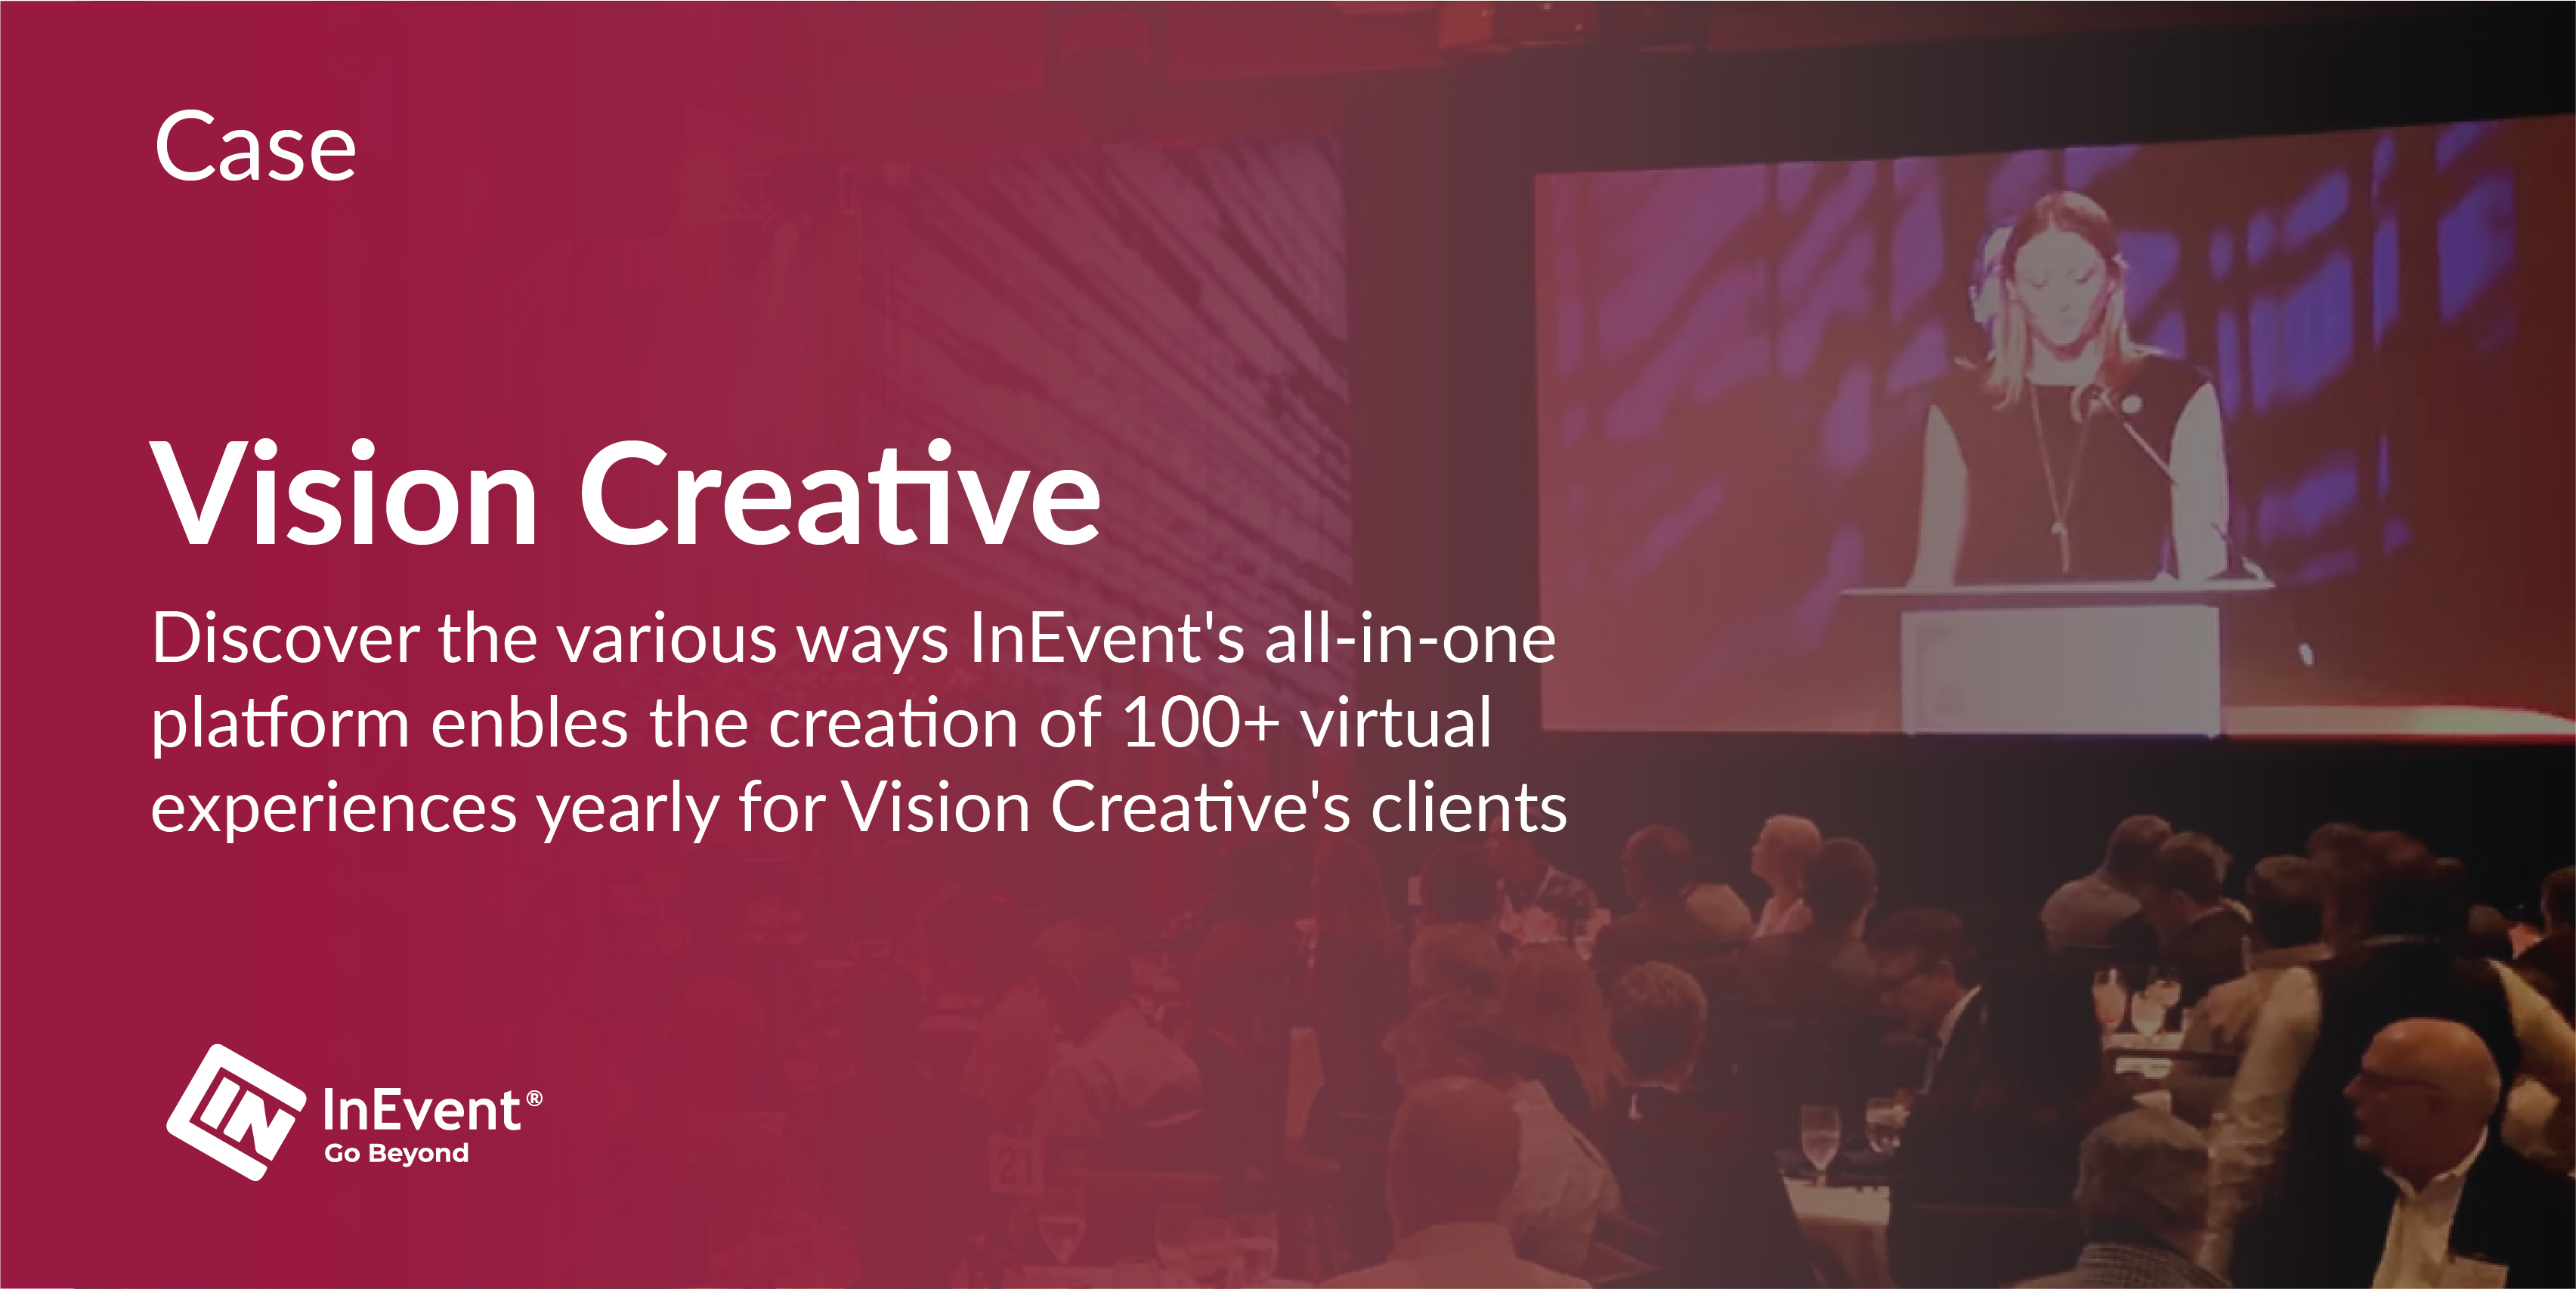 Os eventos recorrentes de sucesso da Vision Creative